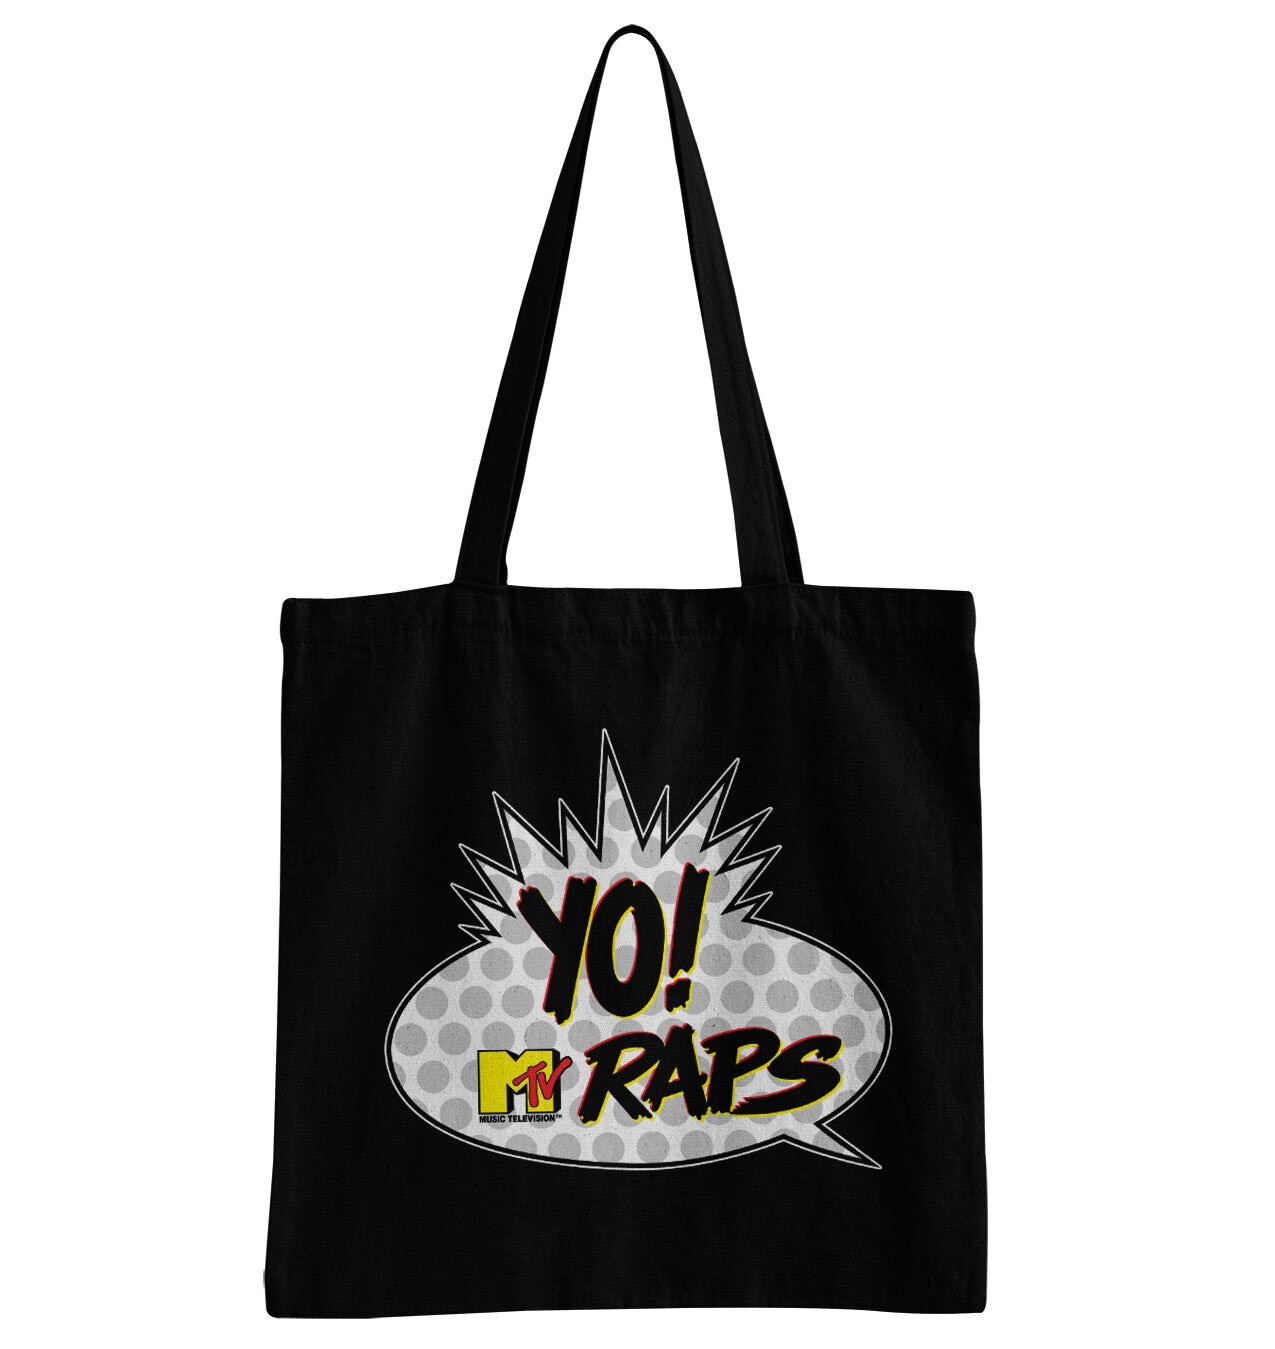 Yo! MTV Raps Classic Logo Tote Bag